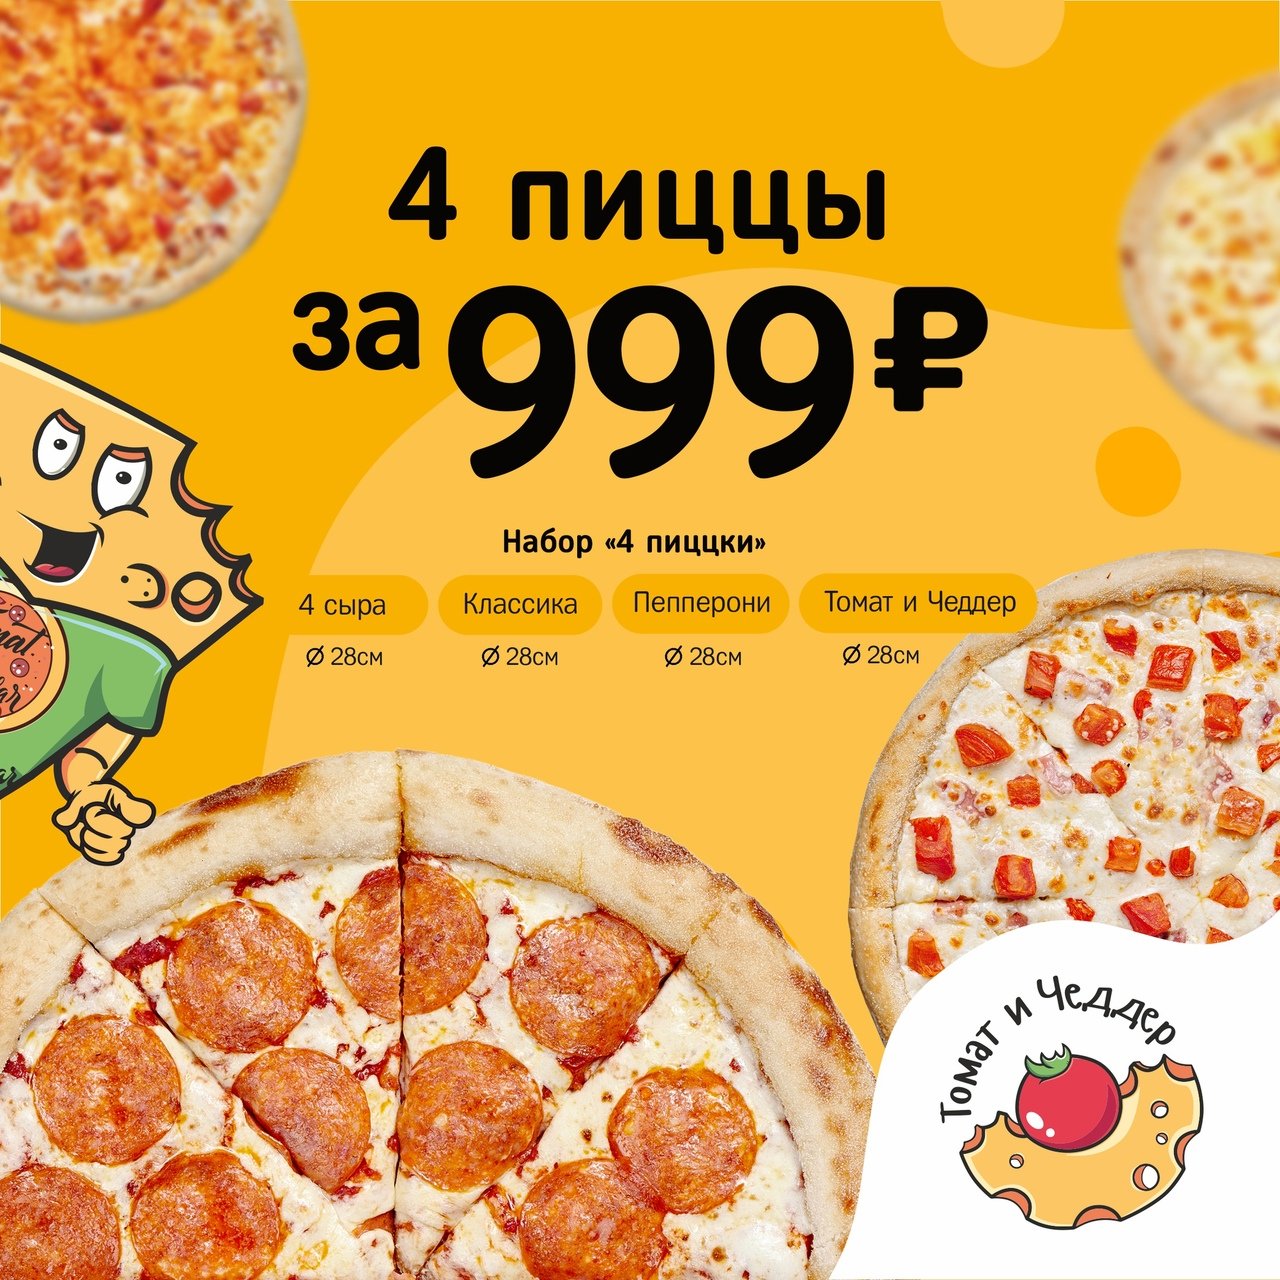 3 пиццы за 999 рублей. ФУДБЭНД пицца 4 пиццы за 999 промокод. Акция 3 пиццы за 999 рублей. 4 Пиццы акция.